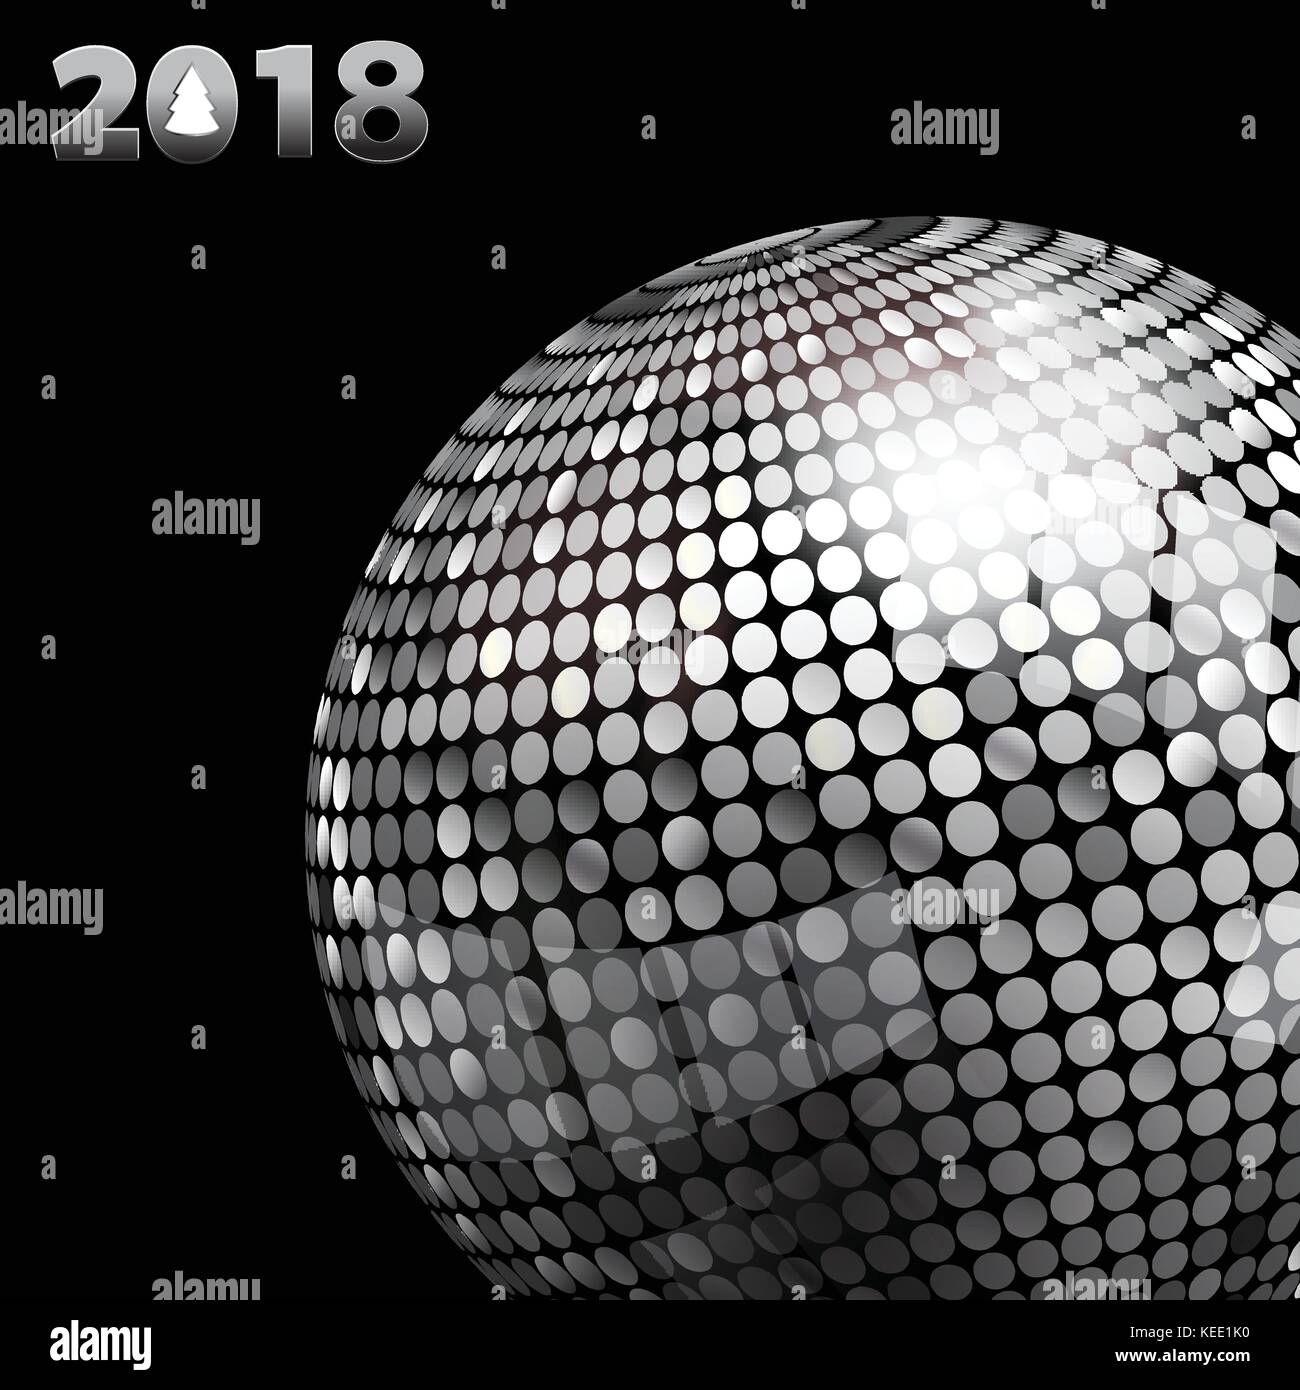 3d illustration d'argent boule disco et 2018 vingt dix-huitième dans l'argent des numéros avec arbre de plus de fond noir Illustration de Vecteur